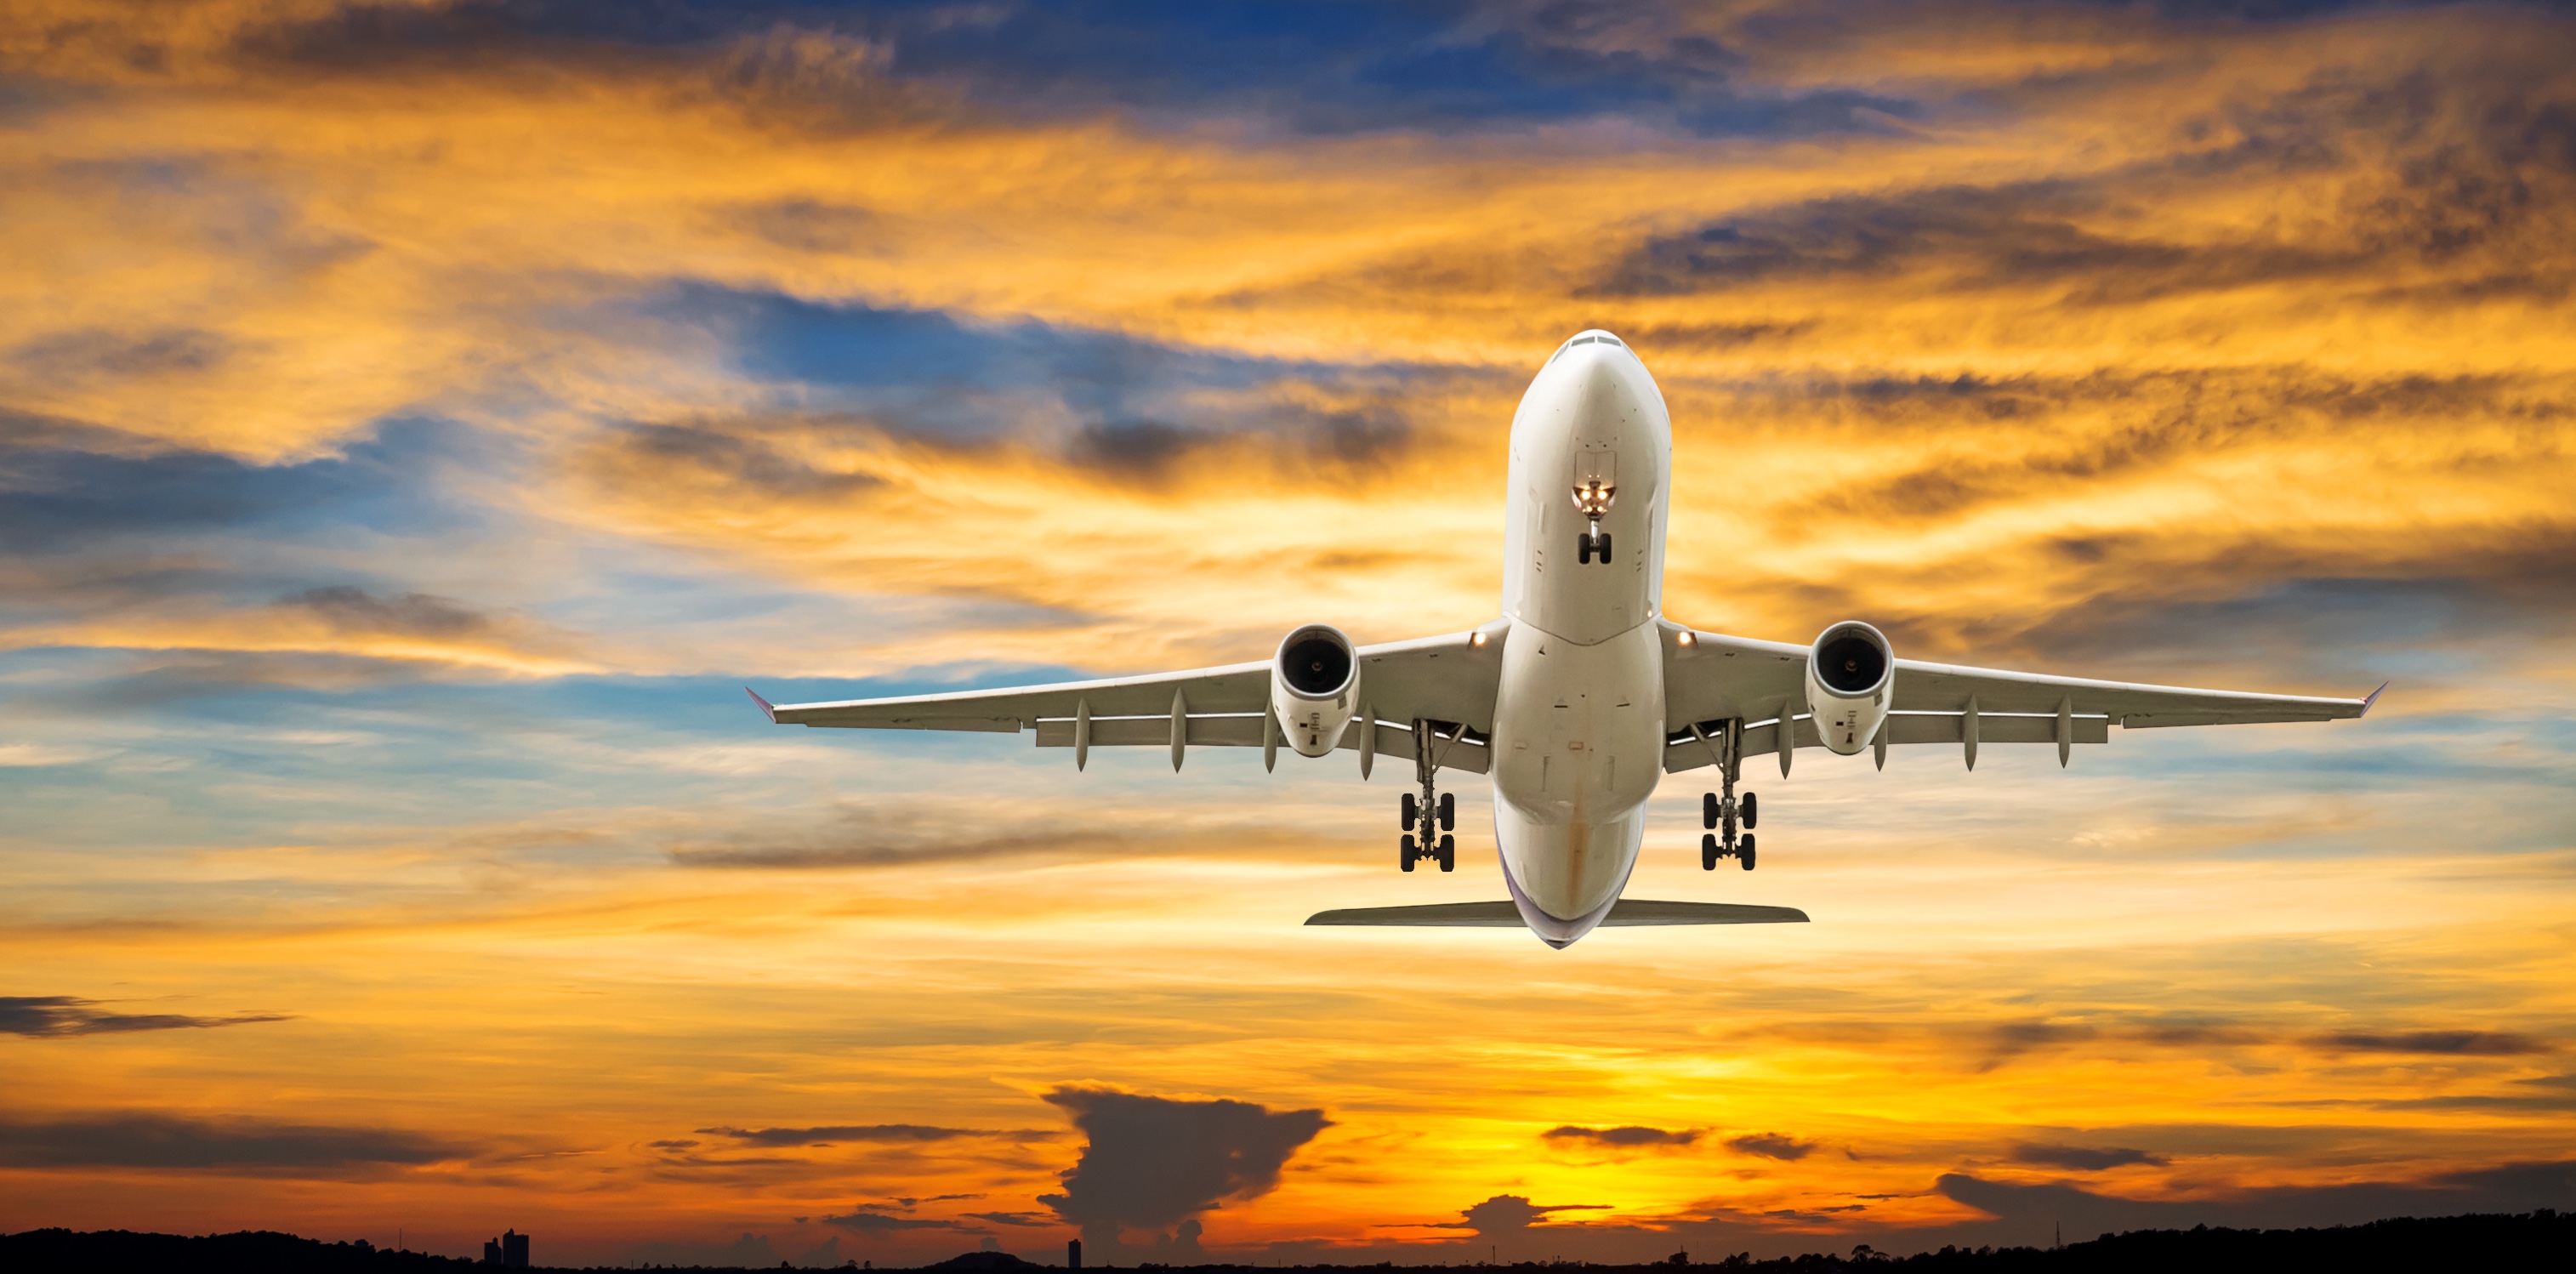 Etsi halvat lennot: Hainan Airlines